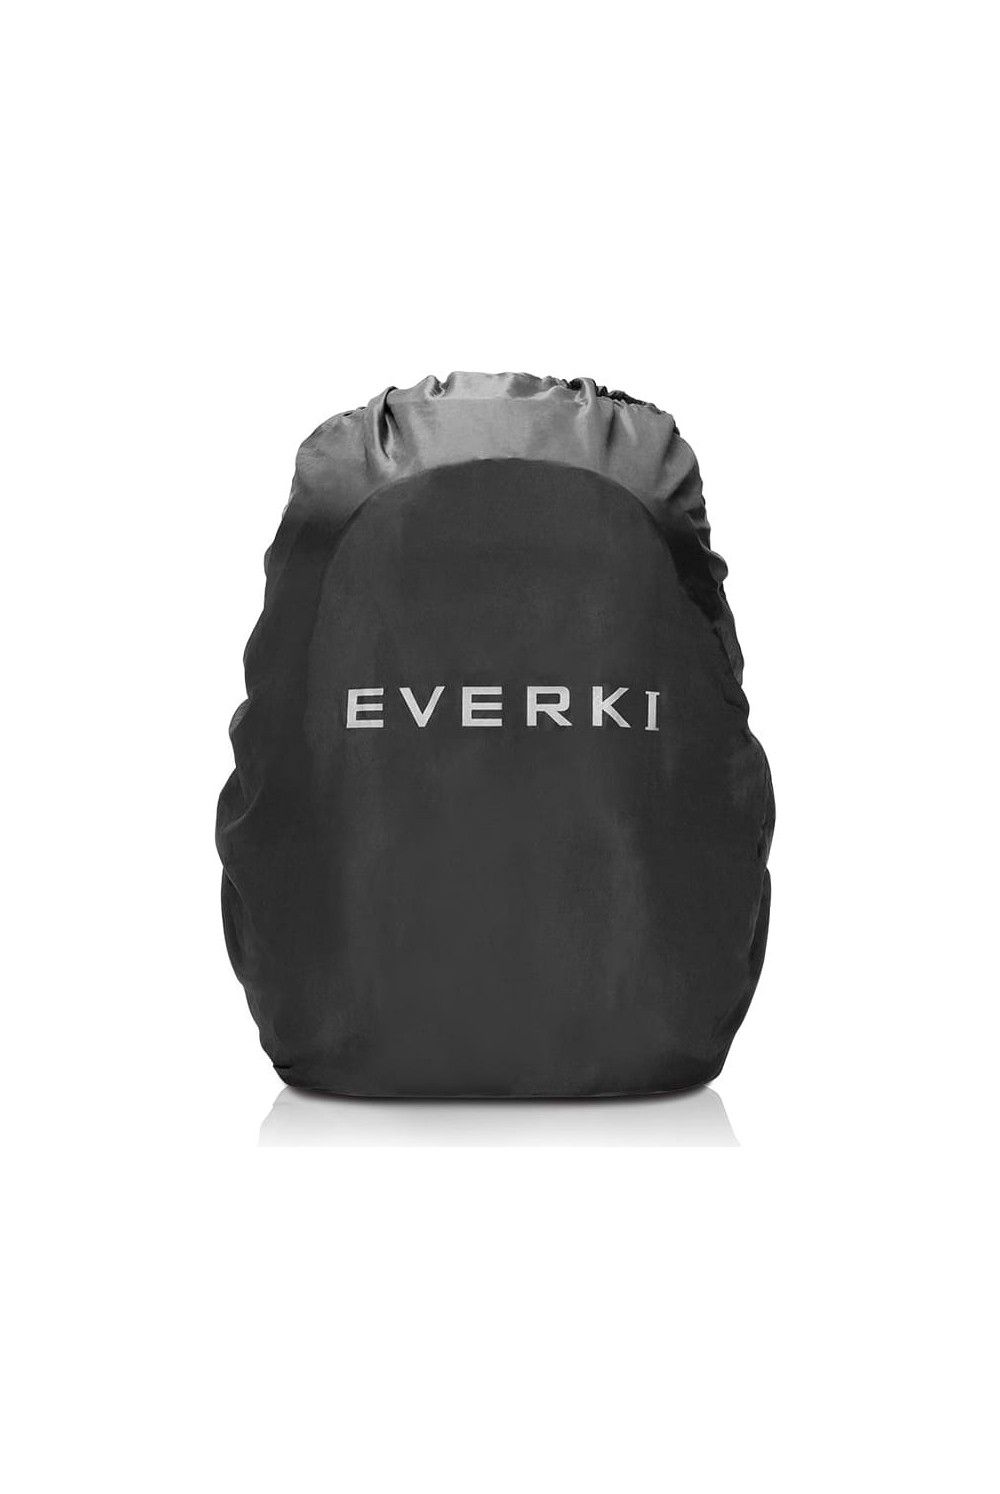 Everki Concept 2 17.3 Zoll Laptop Rucksack